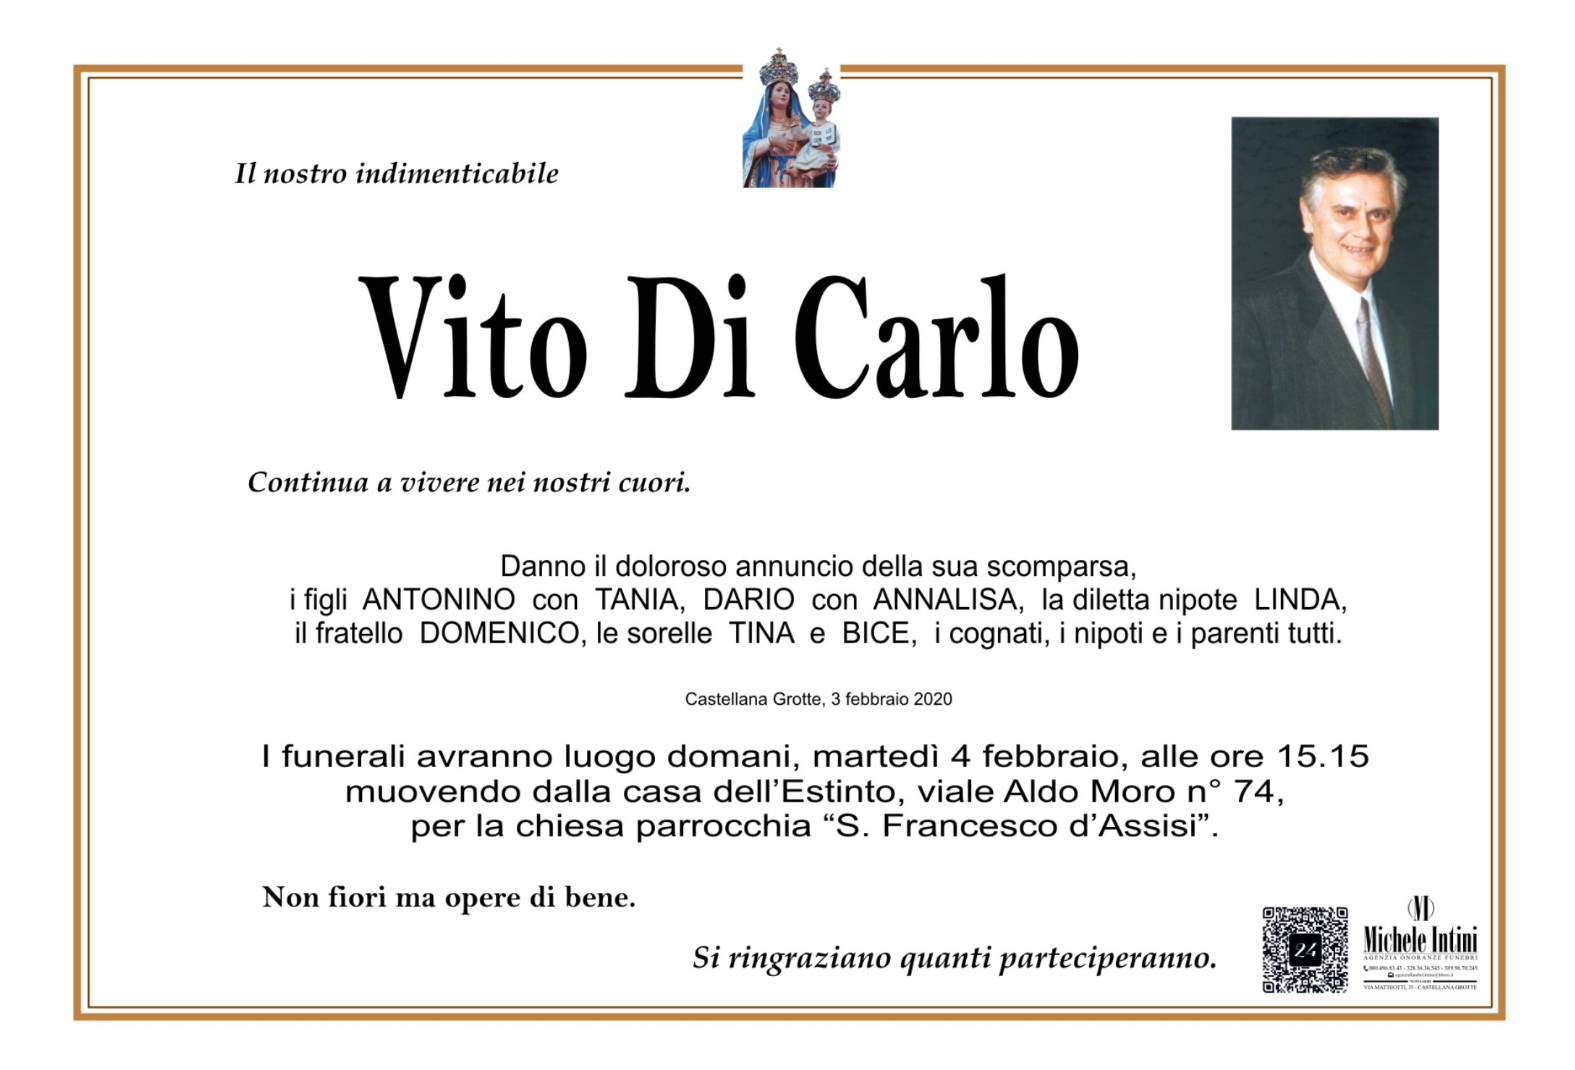 Vito Di Carlo